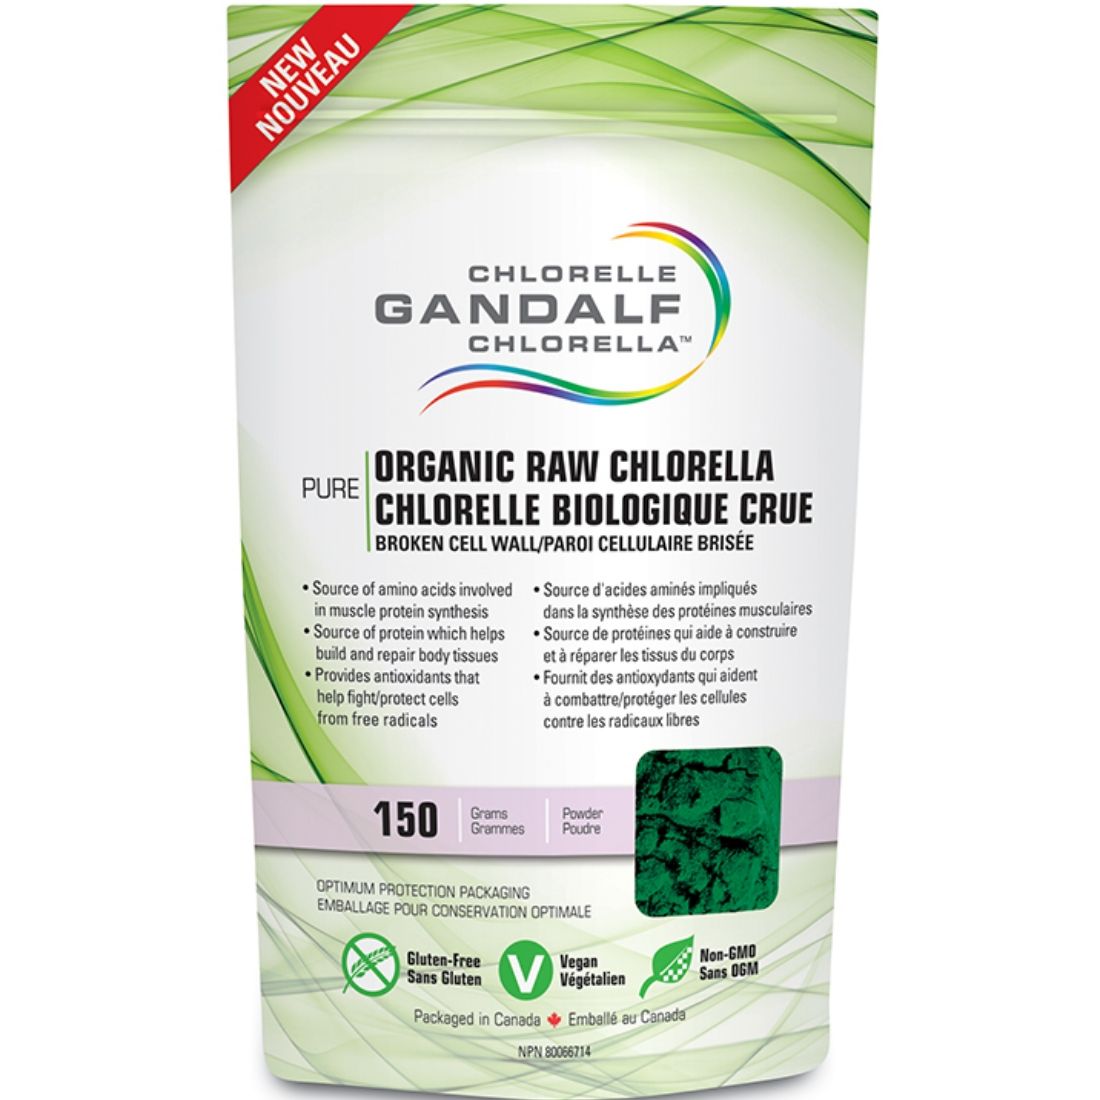 Gandalf Organic Chlorella Powder, 150g